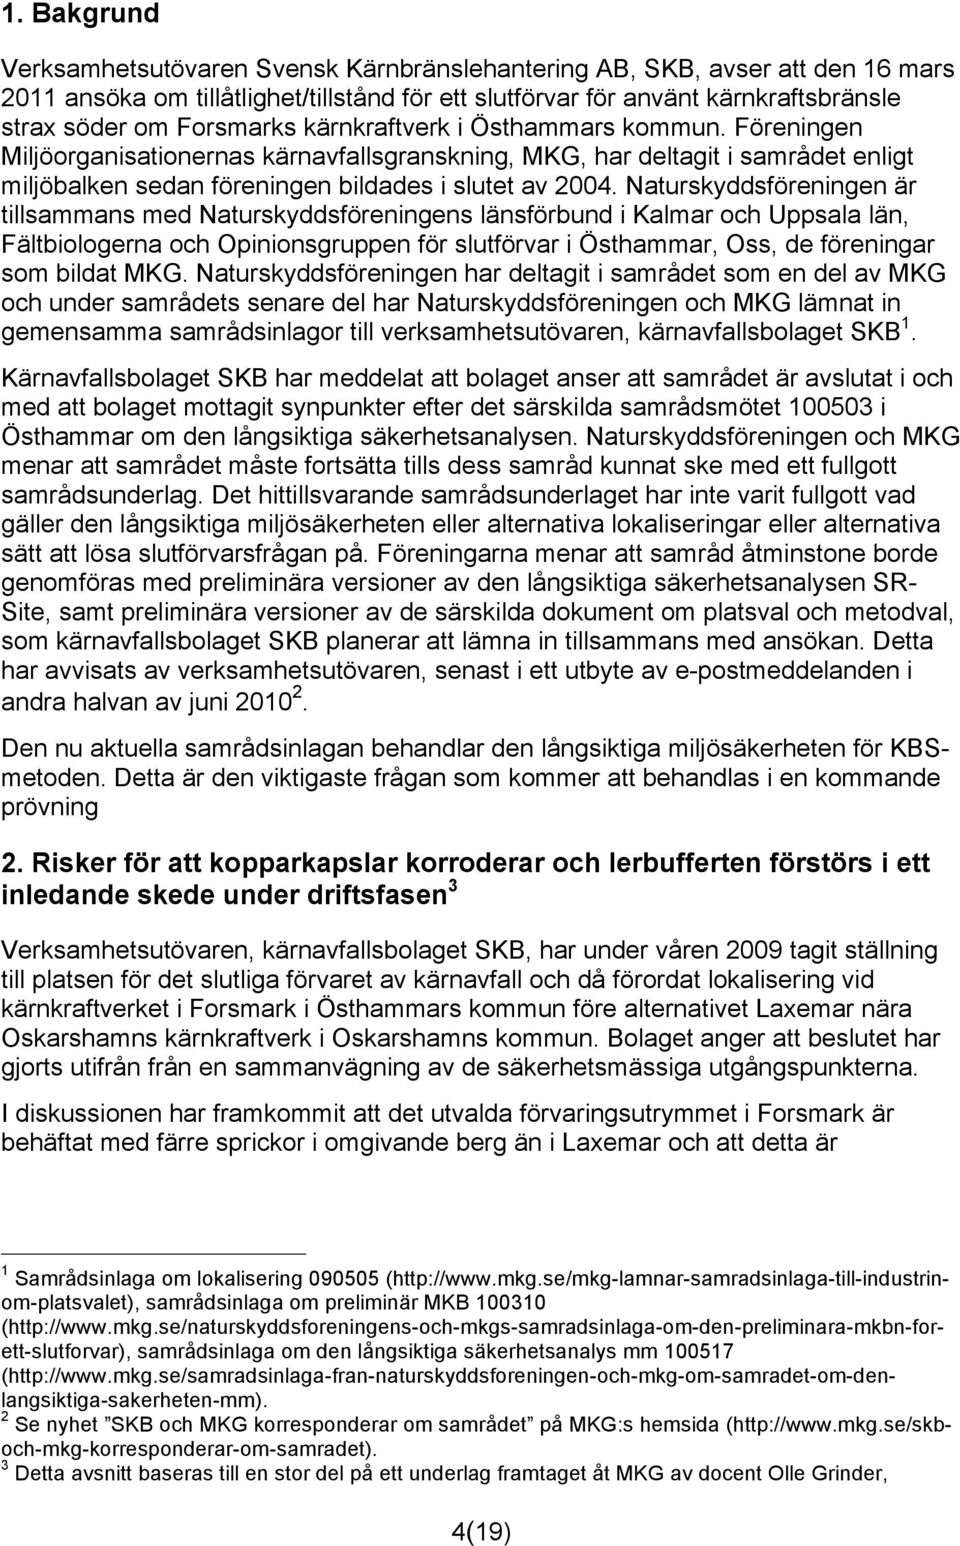 Naturskyddsföreningen är tillsammans med Naturskyddsföreningens länsförbund i Kalmar och Uppsala län, Fältbiologerna och Opinionsgruppen för slutförvar i Östhammar, Oss, de föreningar som bildat MKG.